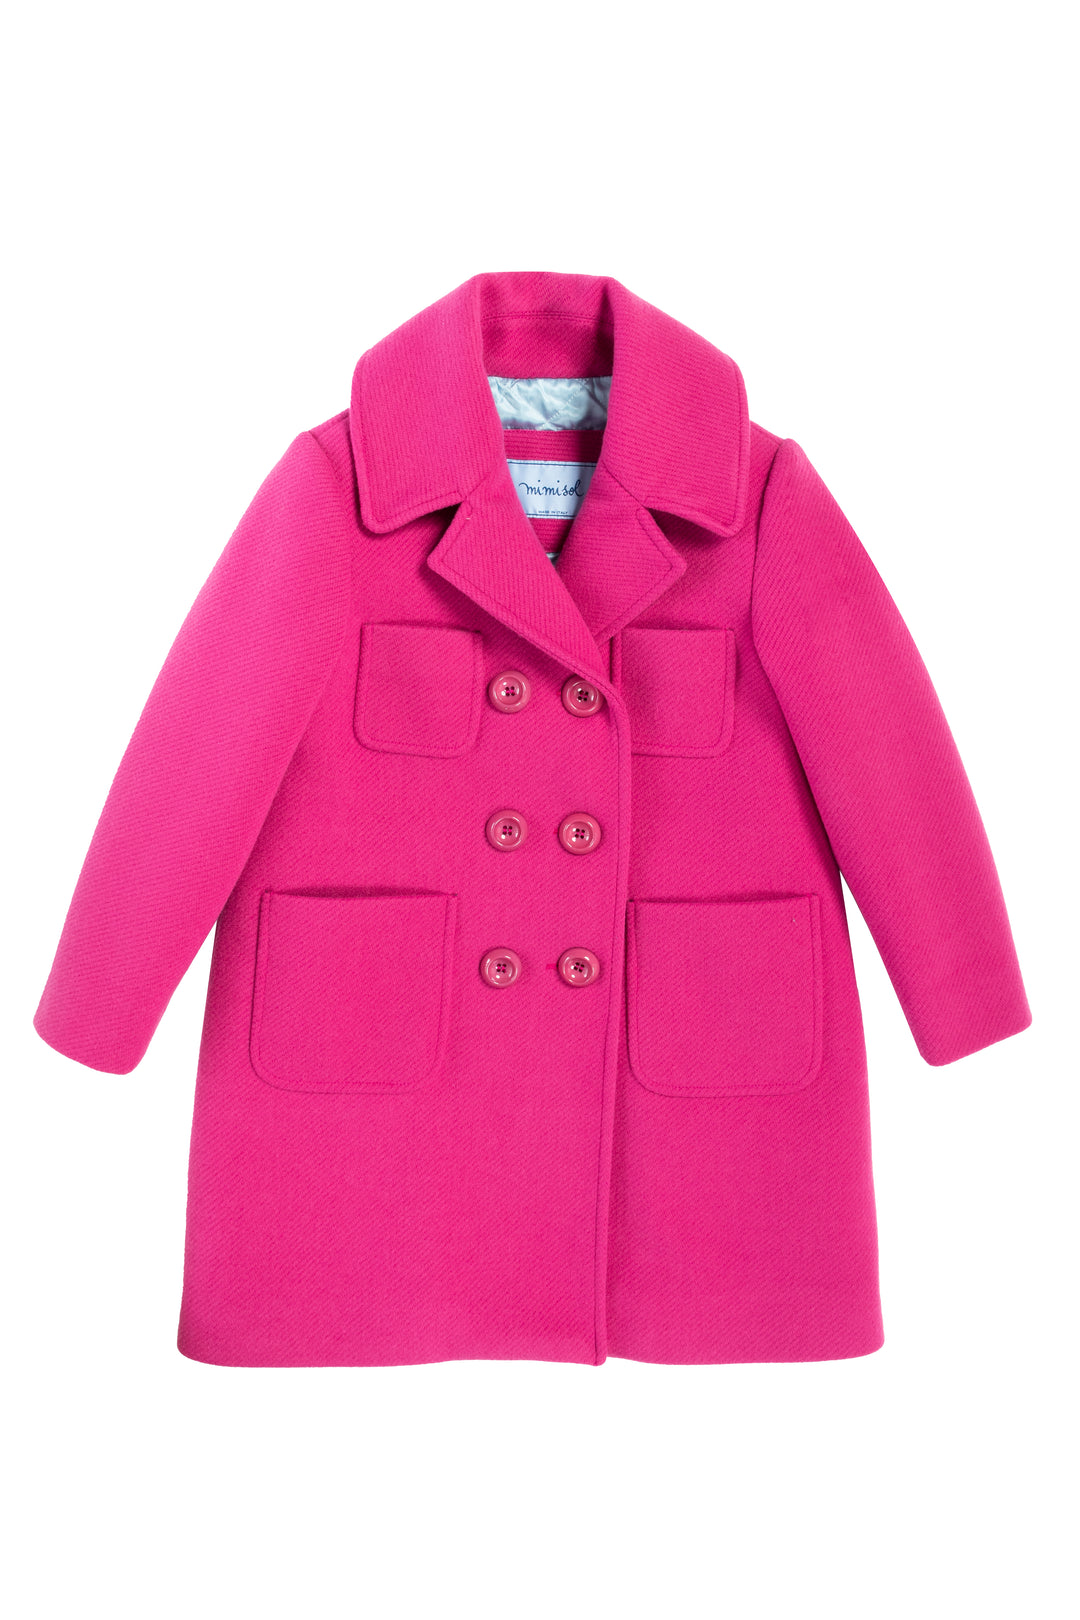 Manteau fuchsia pour fille, avec quatre poches, fermeture sur le devant avec boutons